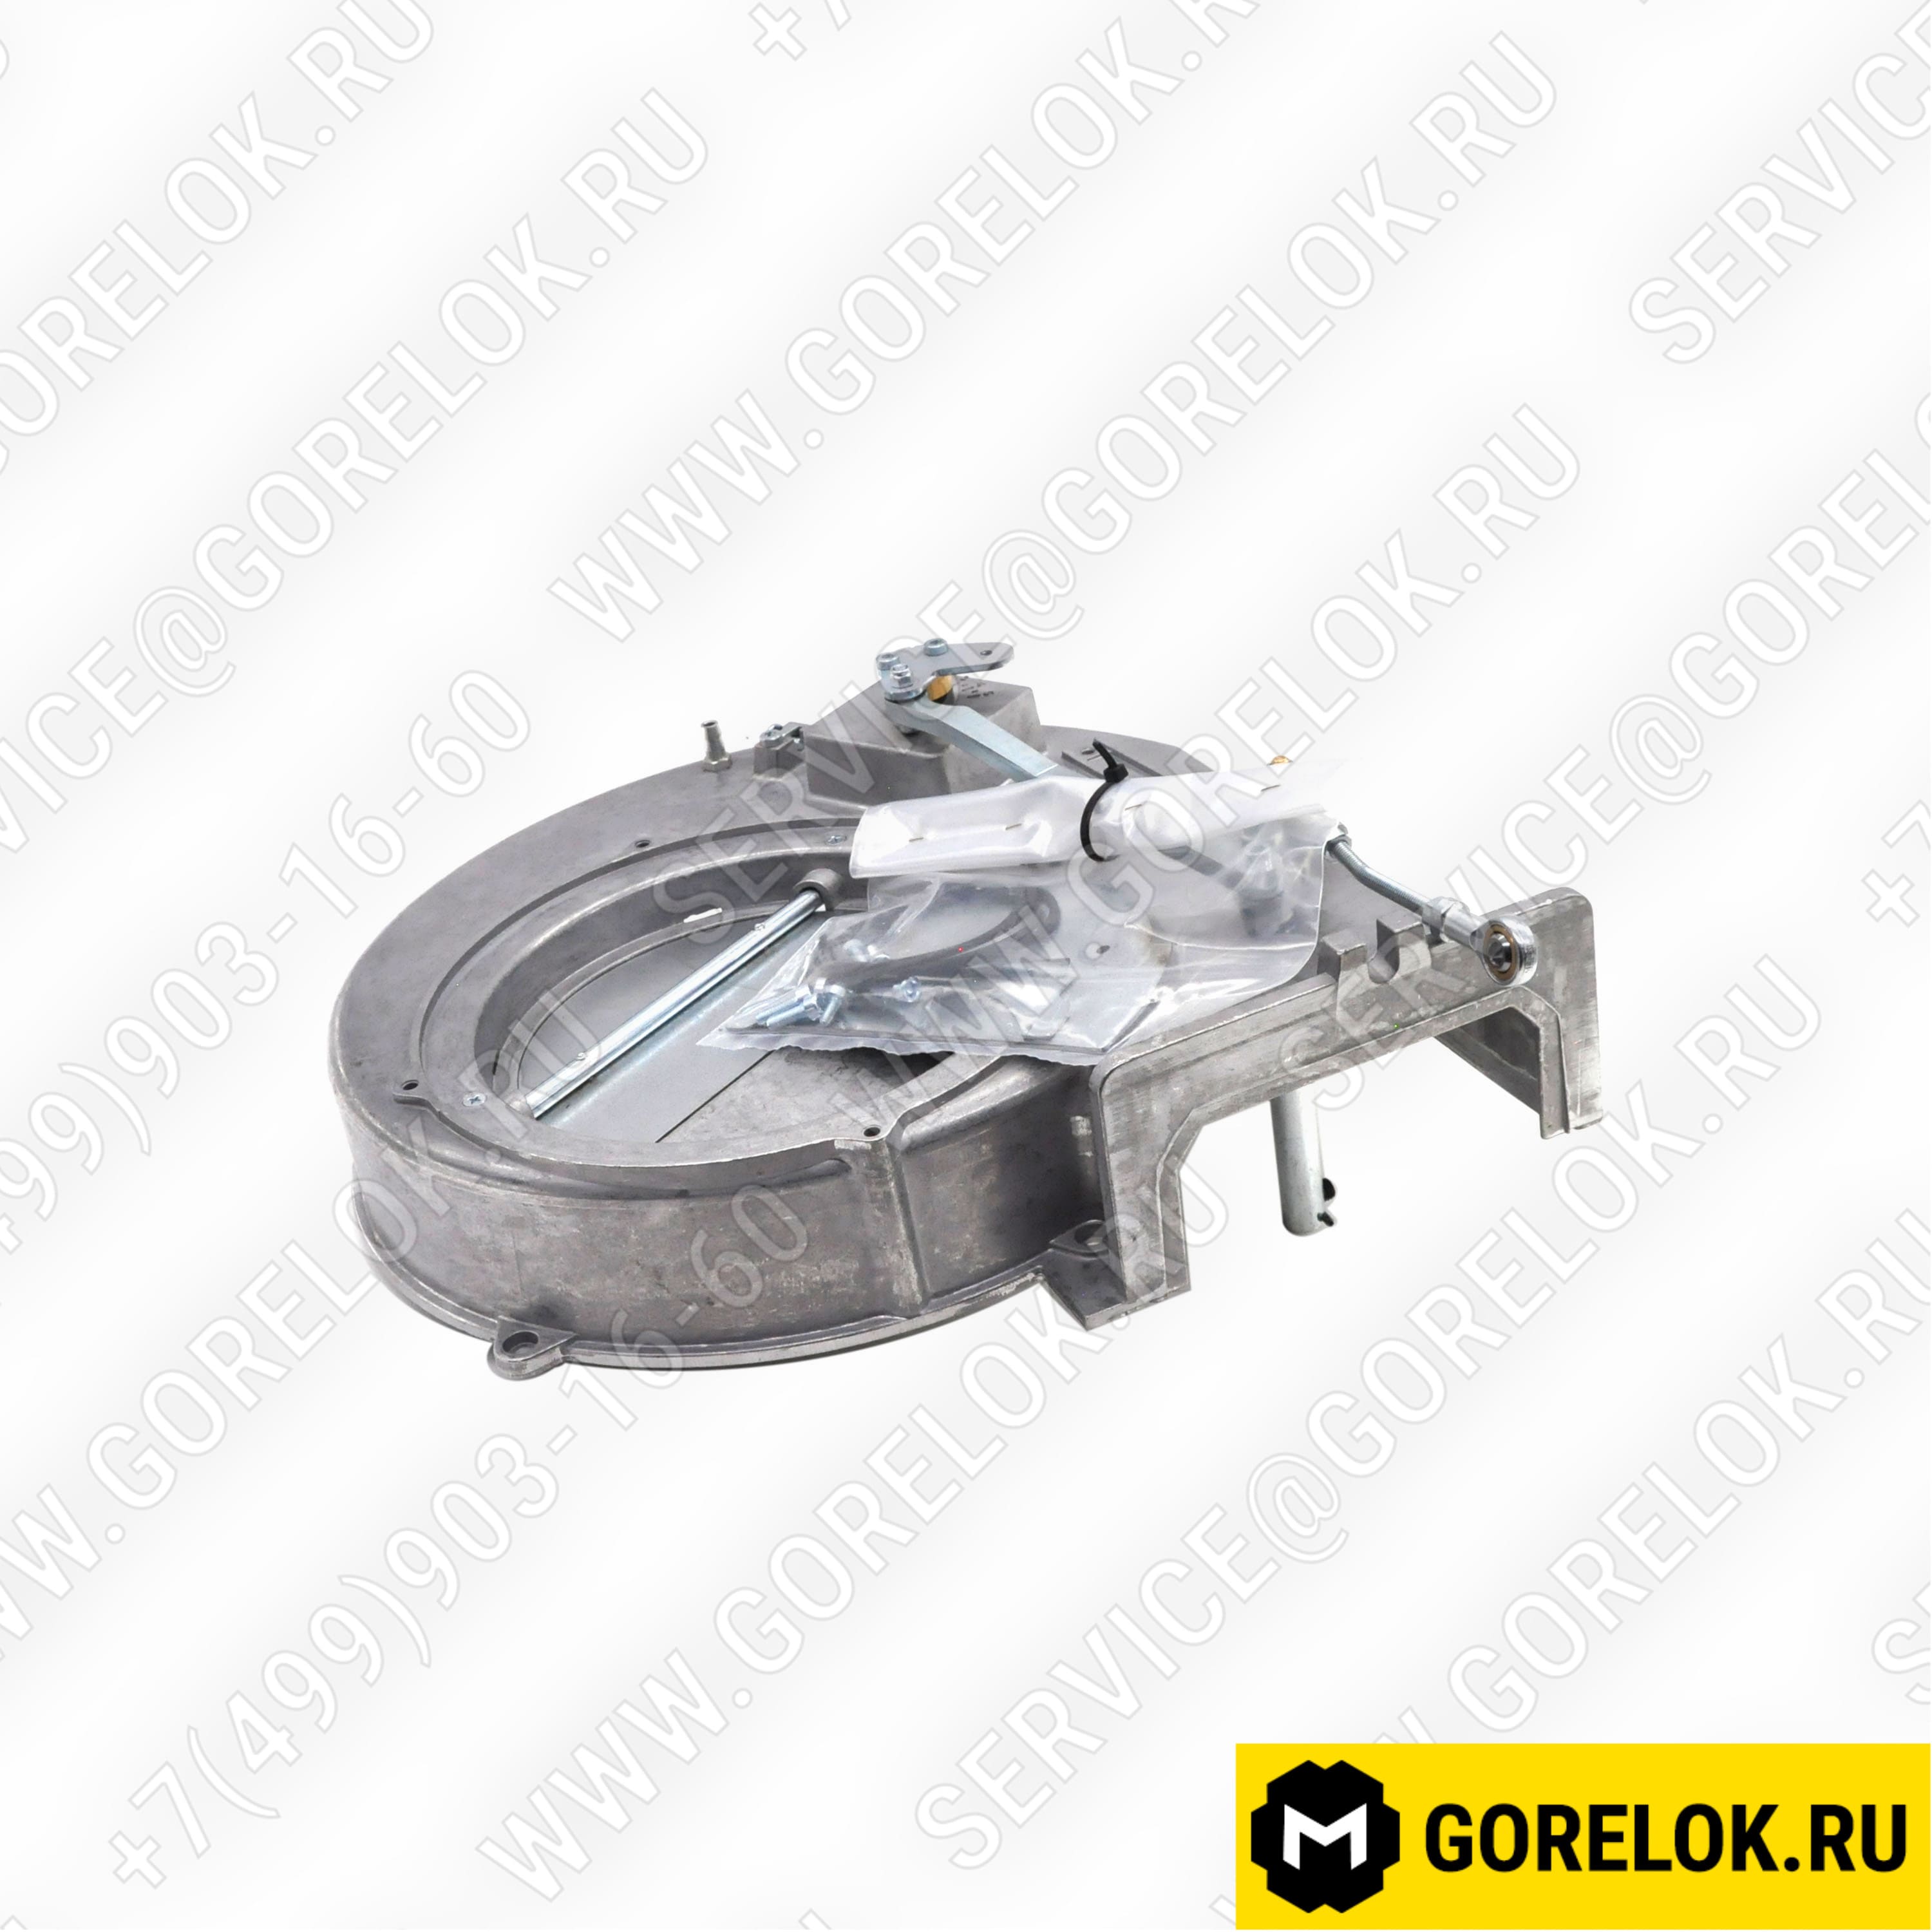 65326797 Купить 4R105005 Двигатель Riello / Риелло | Zipgorelok.ru